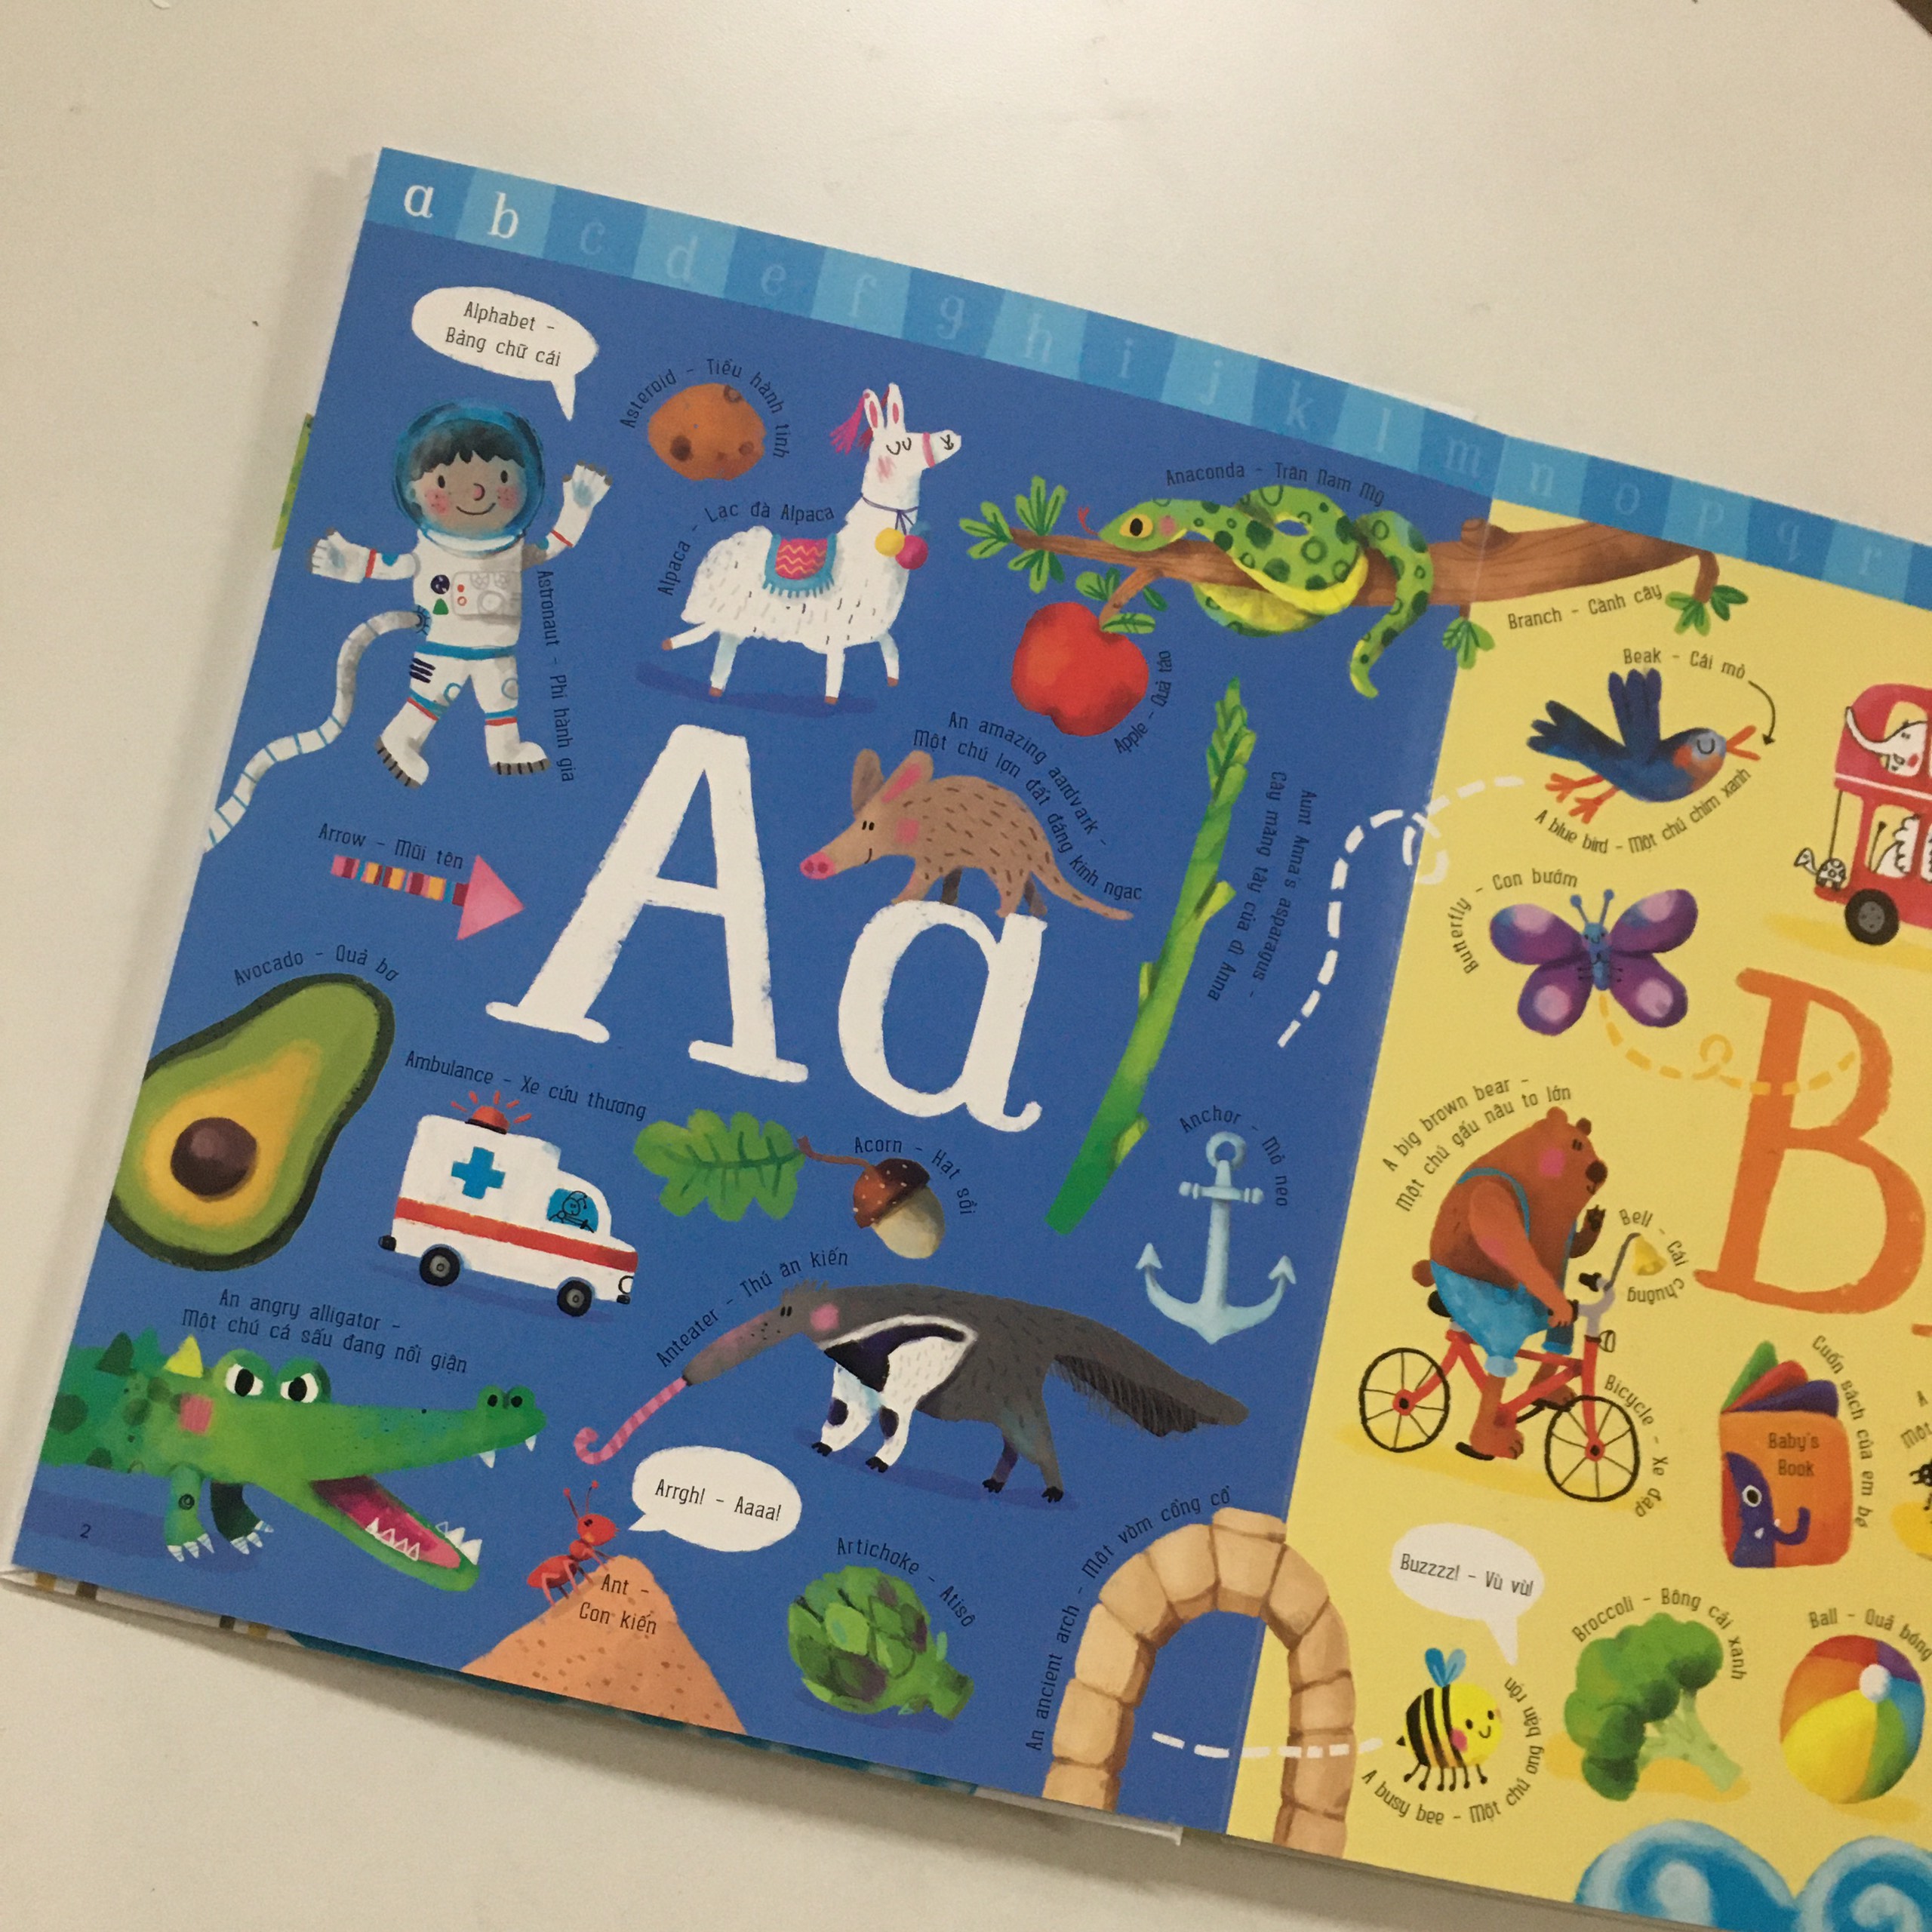 Big Book Of ABC - Cuốn Sách Khổng Lồ Về Bảng Chữ Cái Tiếng Anh